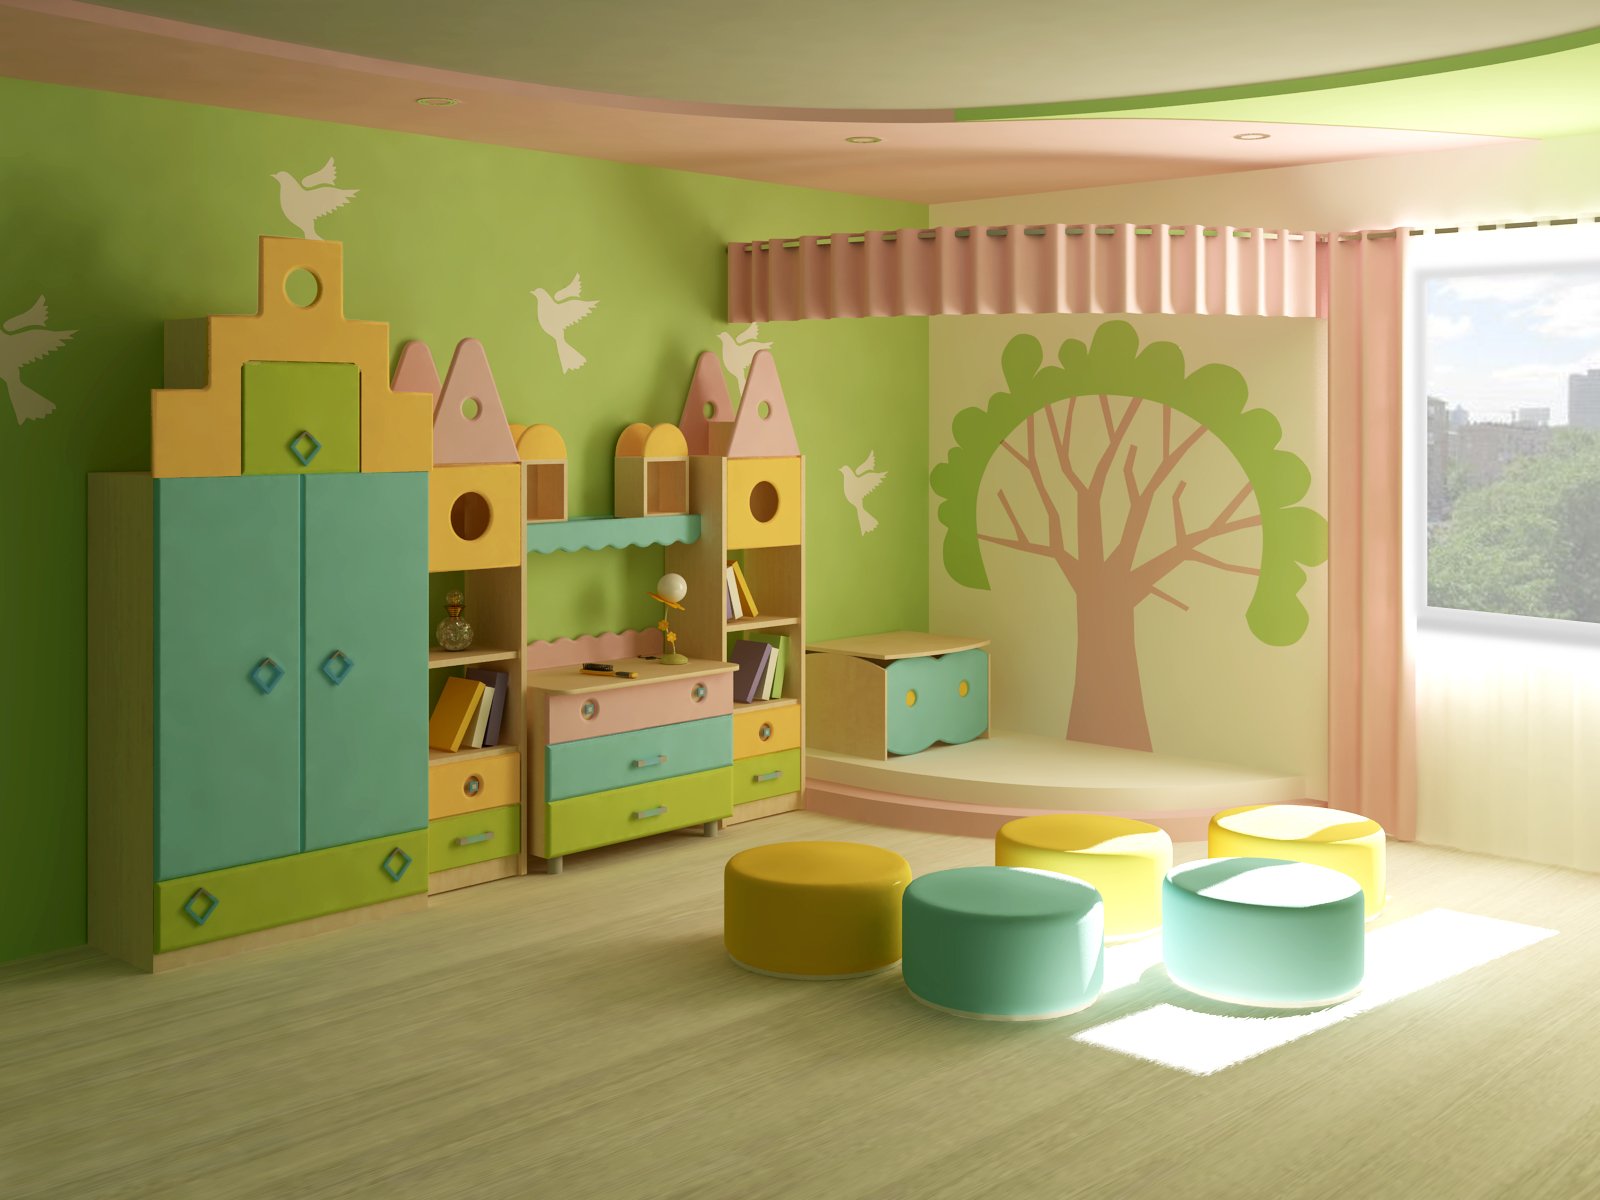 Детская игра мебель. Мебель для детского сада. Интерьер детского сада. Мебель для игровой комнаты в детском саду. Интерьер группы в детском саду.